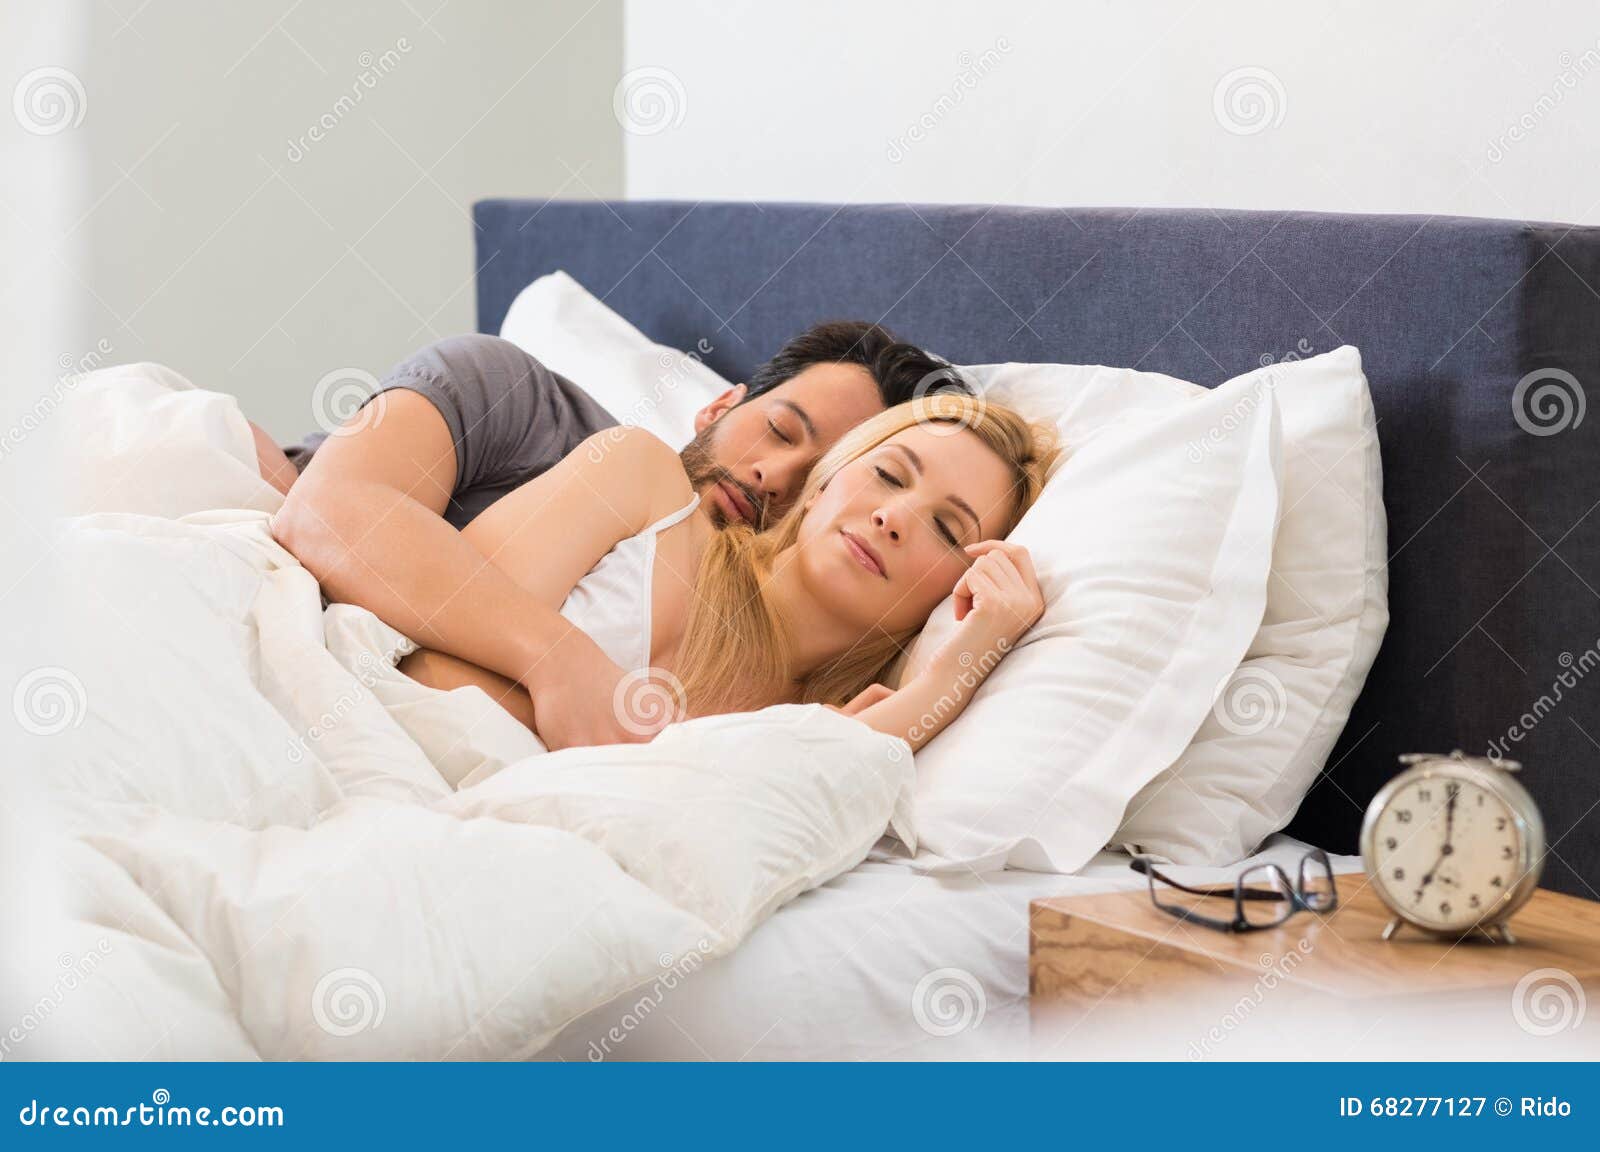 couple sleeping on bed